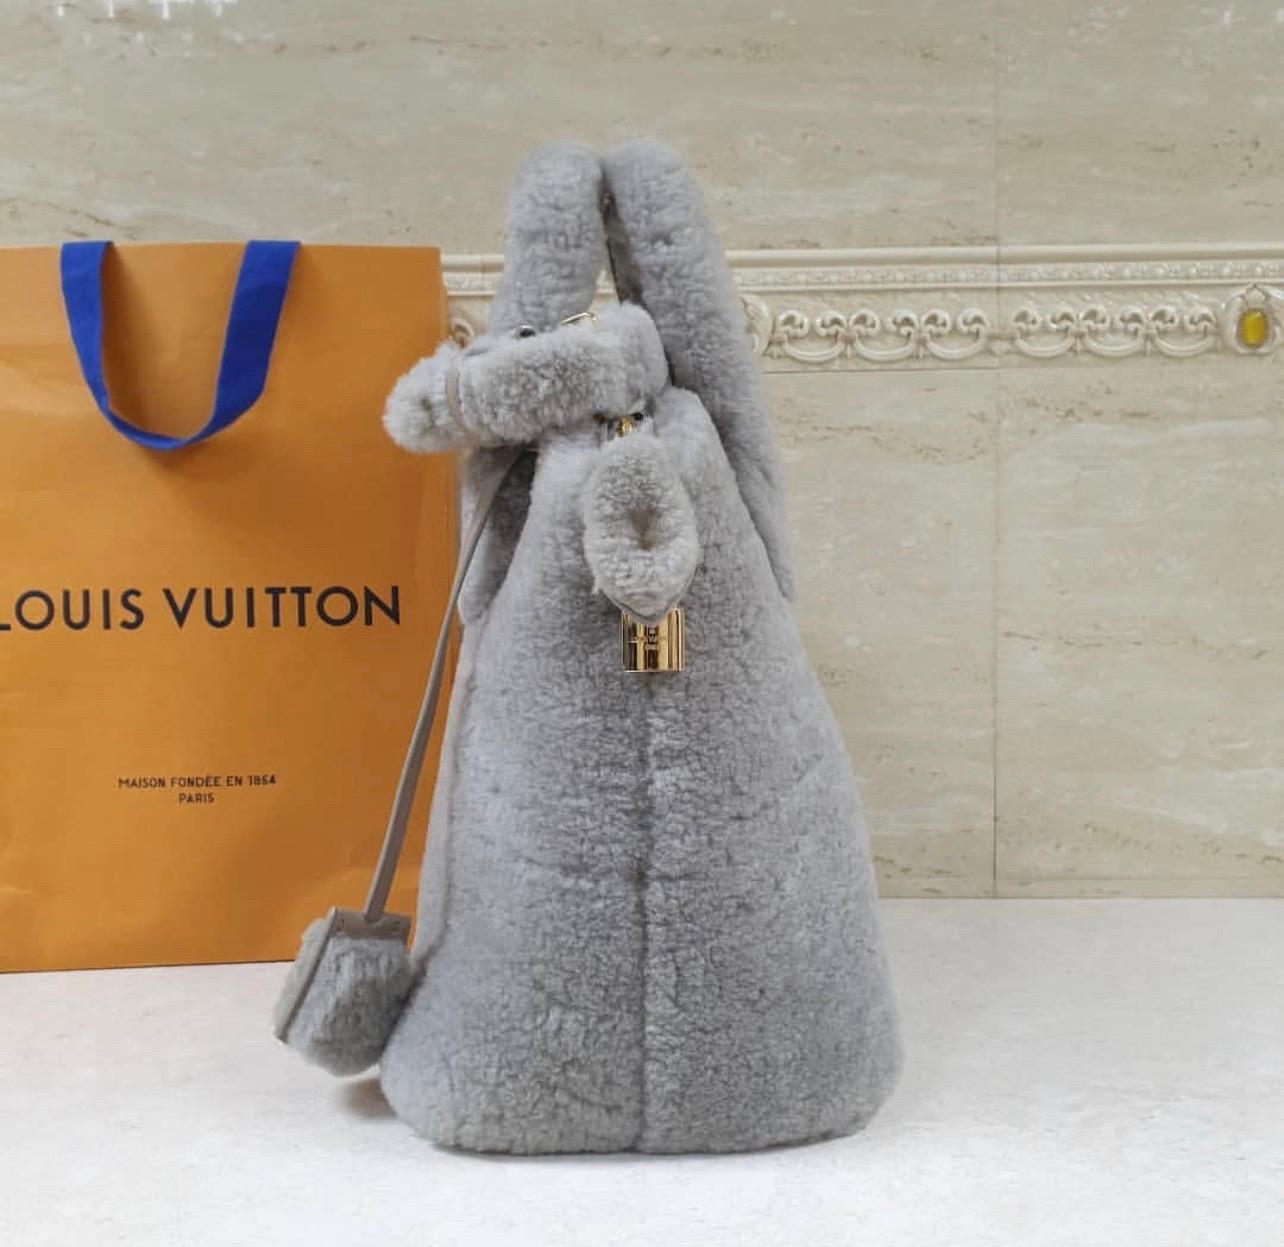 Louis Vuitton Shearling Pulsion Lockit Tasche.
 Aus der Collection'S Herbst/Winter 2011.
 Graues Shearling mit Messingbeschlägen, zwei flachen Henkeln oben, Innenausstattung aus grauem Leder, einer Schlitztasche an der Innenwand und Reißverschluss